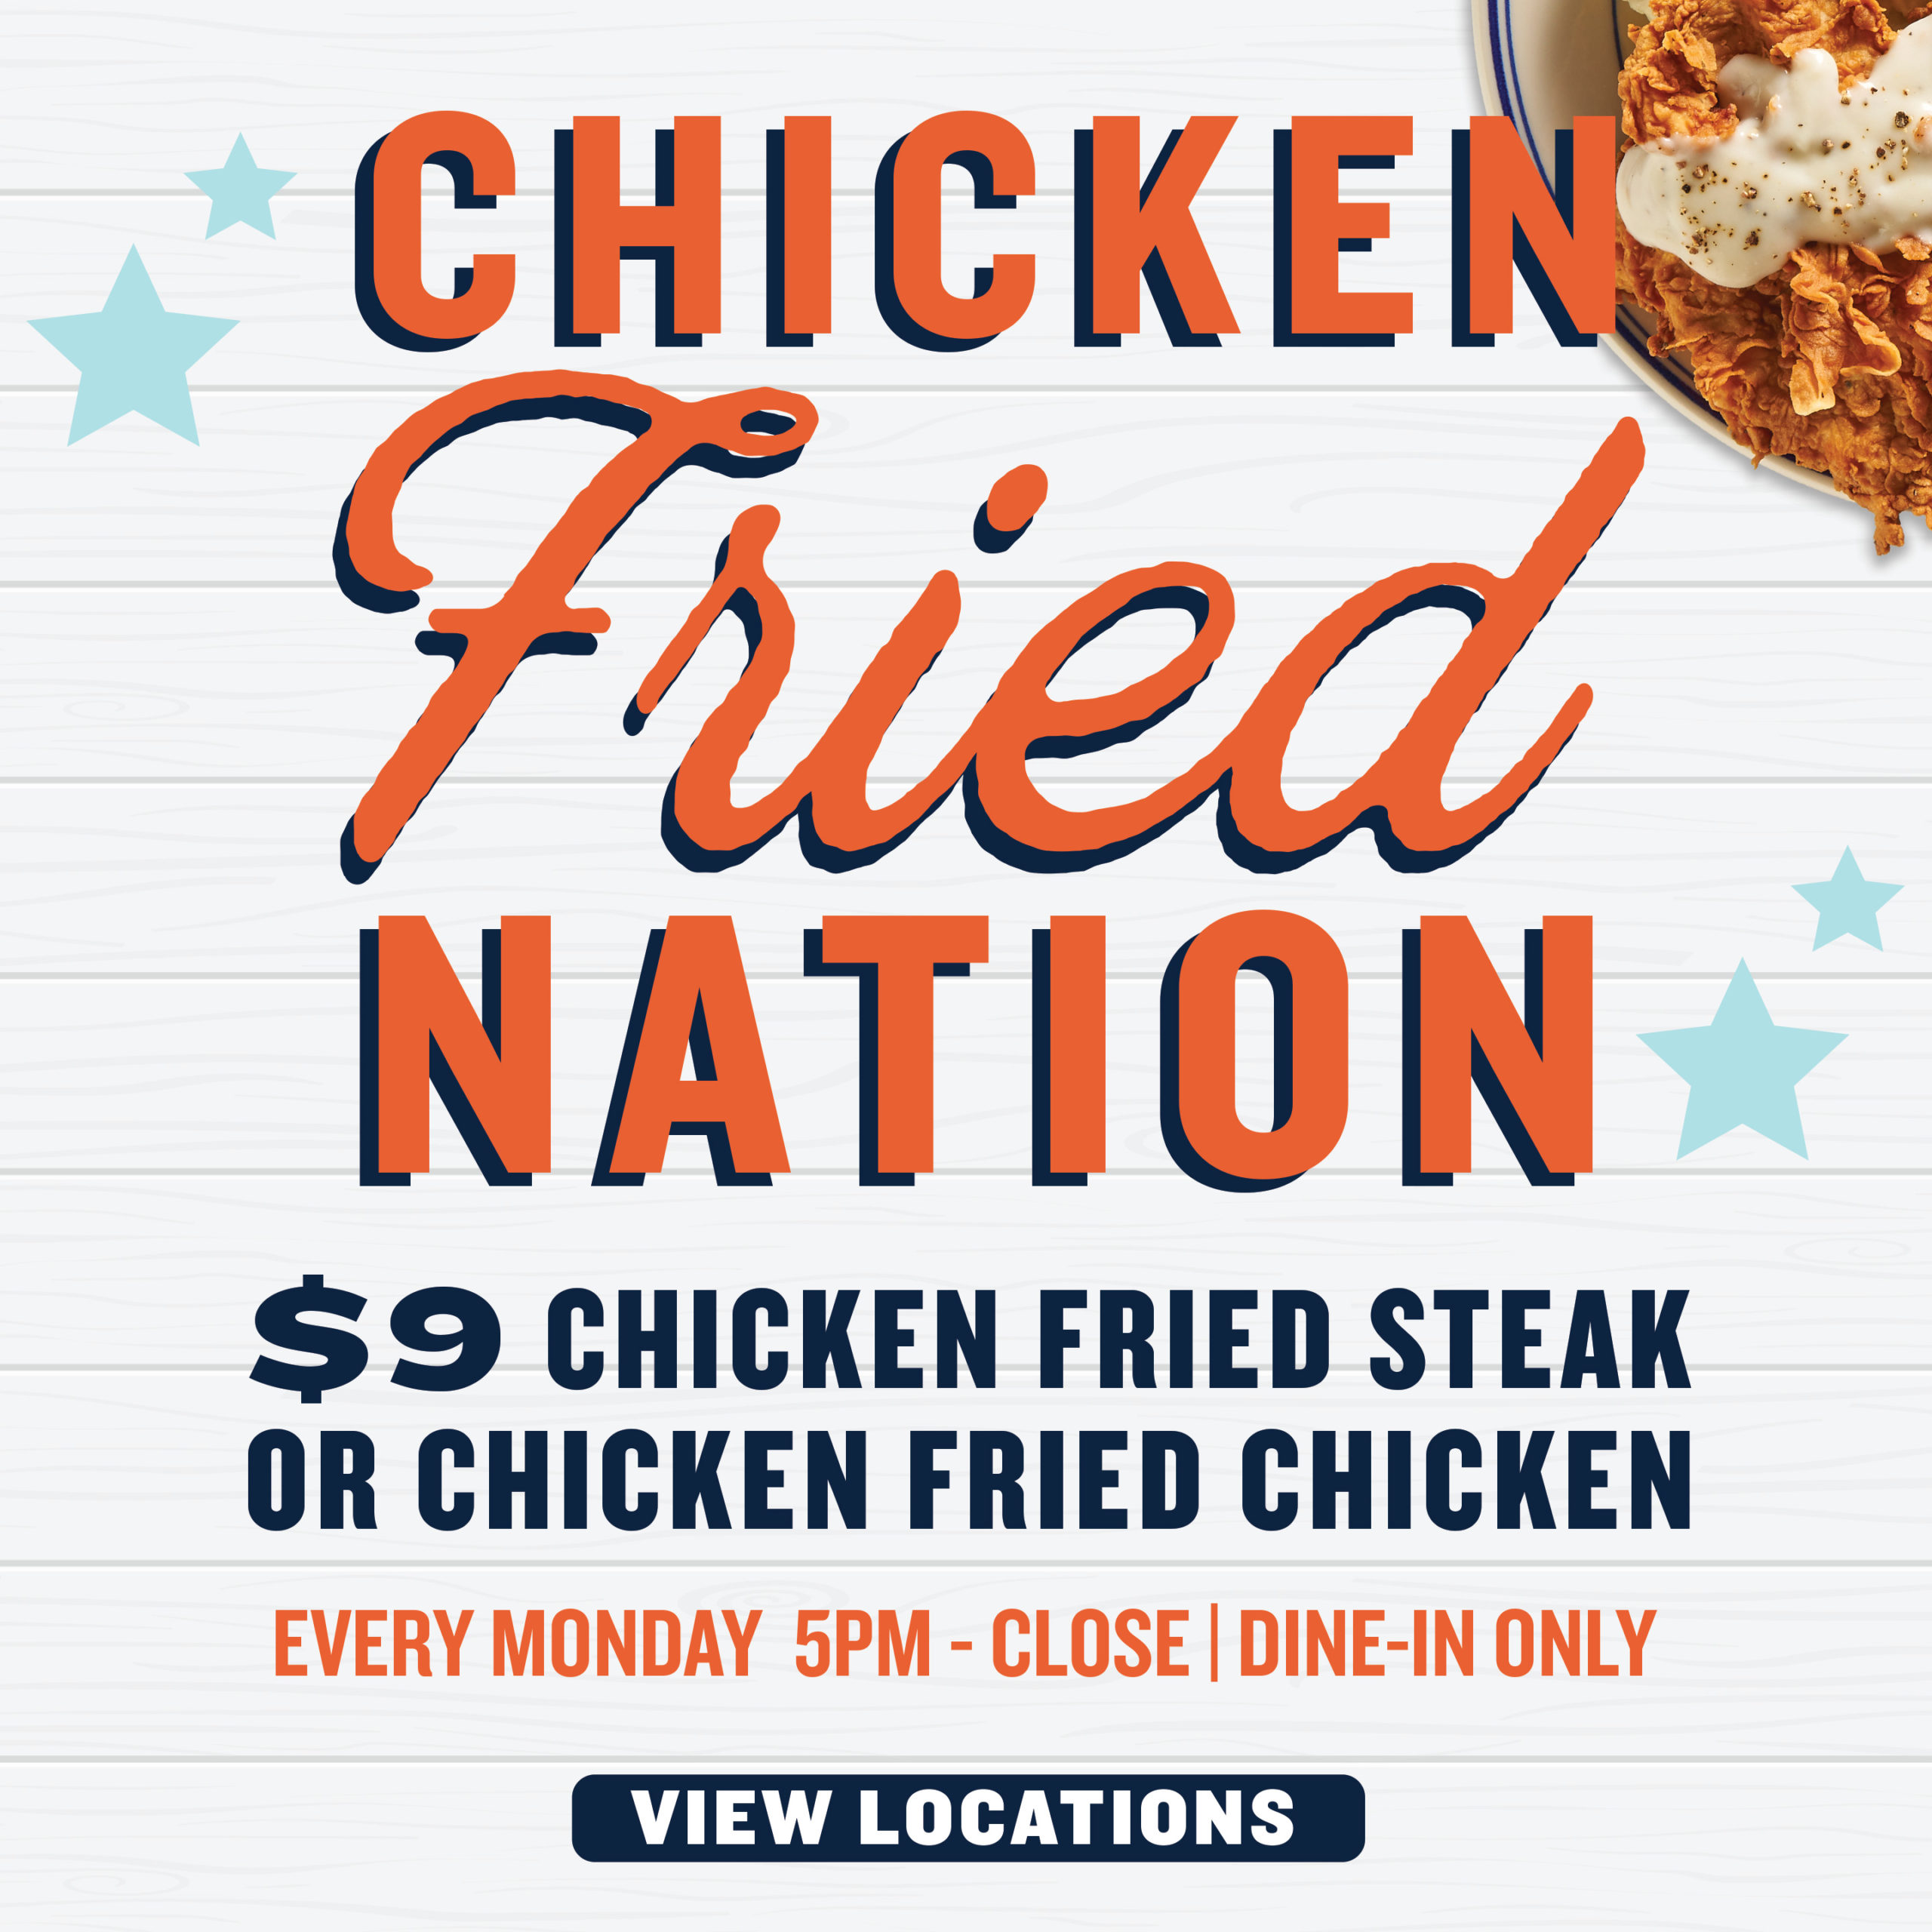 Chicken Fried Nation $9 Chicken Fried Steak or Chicken Fried Chicken. Dine-in only on Mondays 5PM-Close